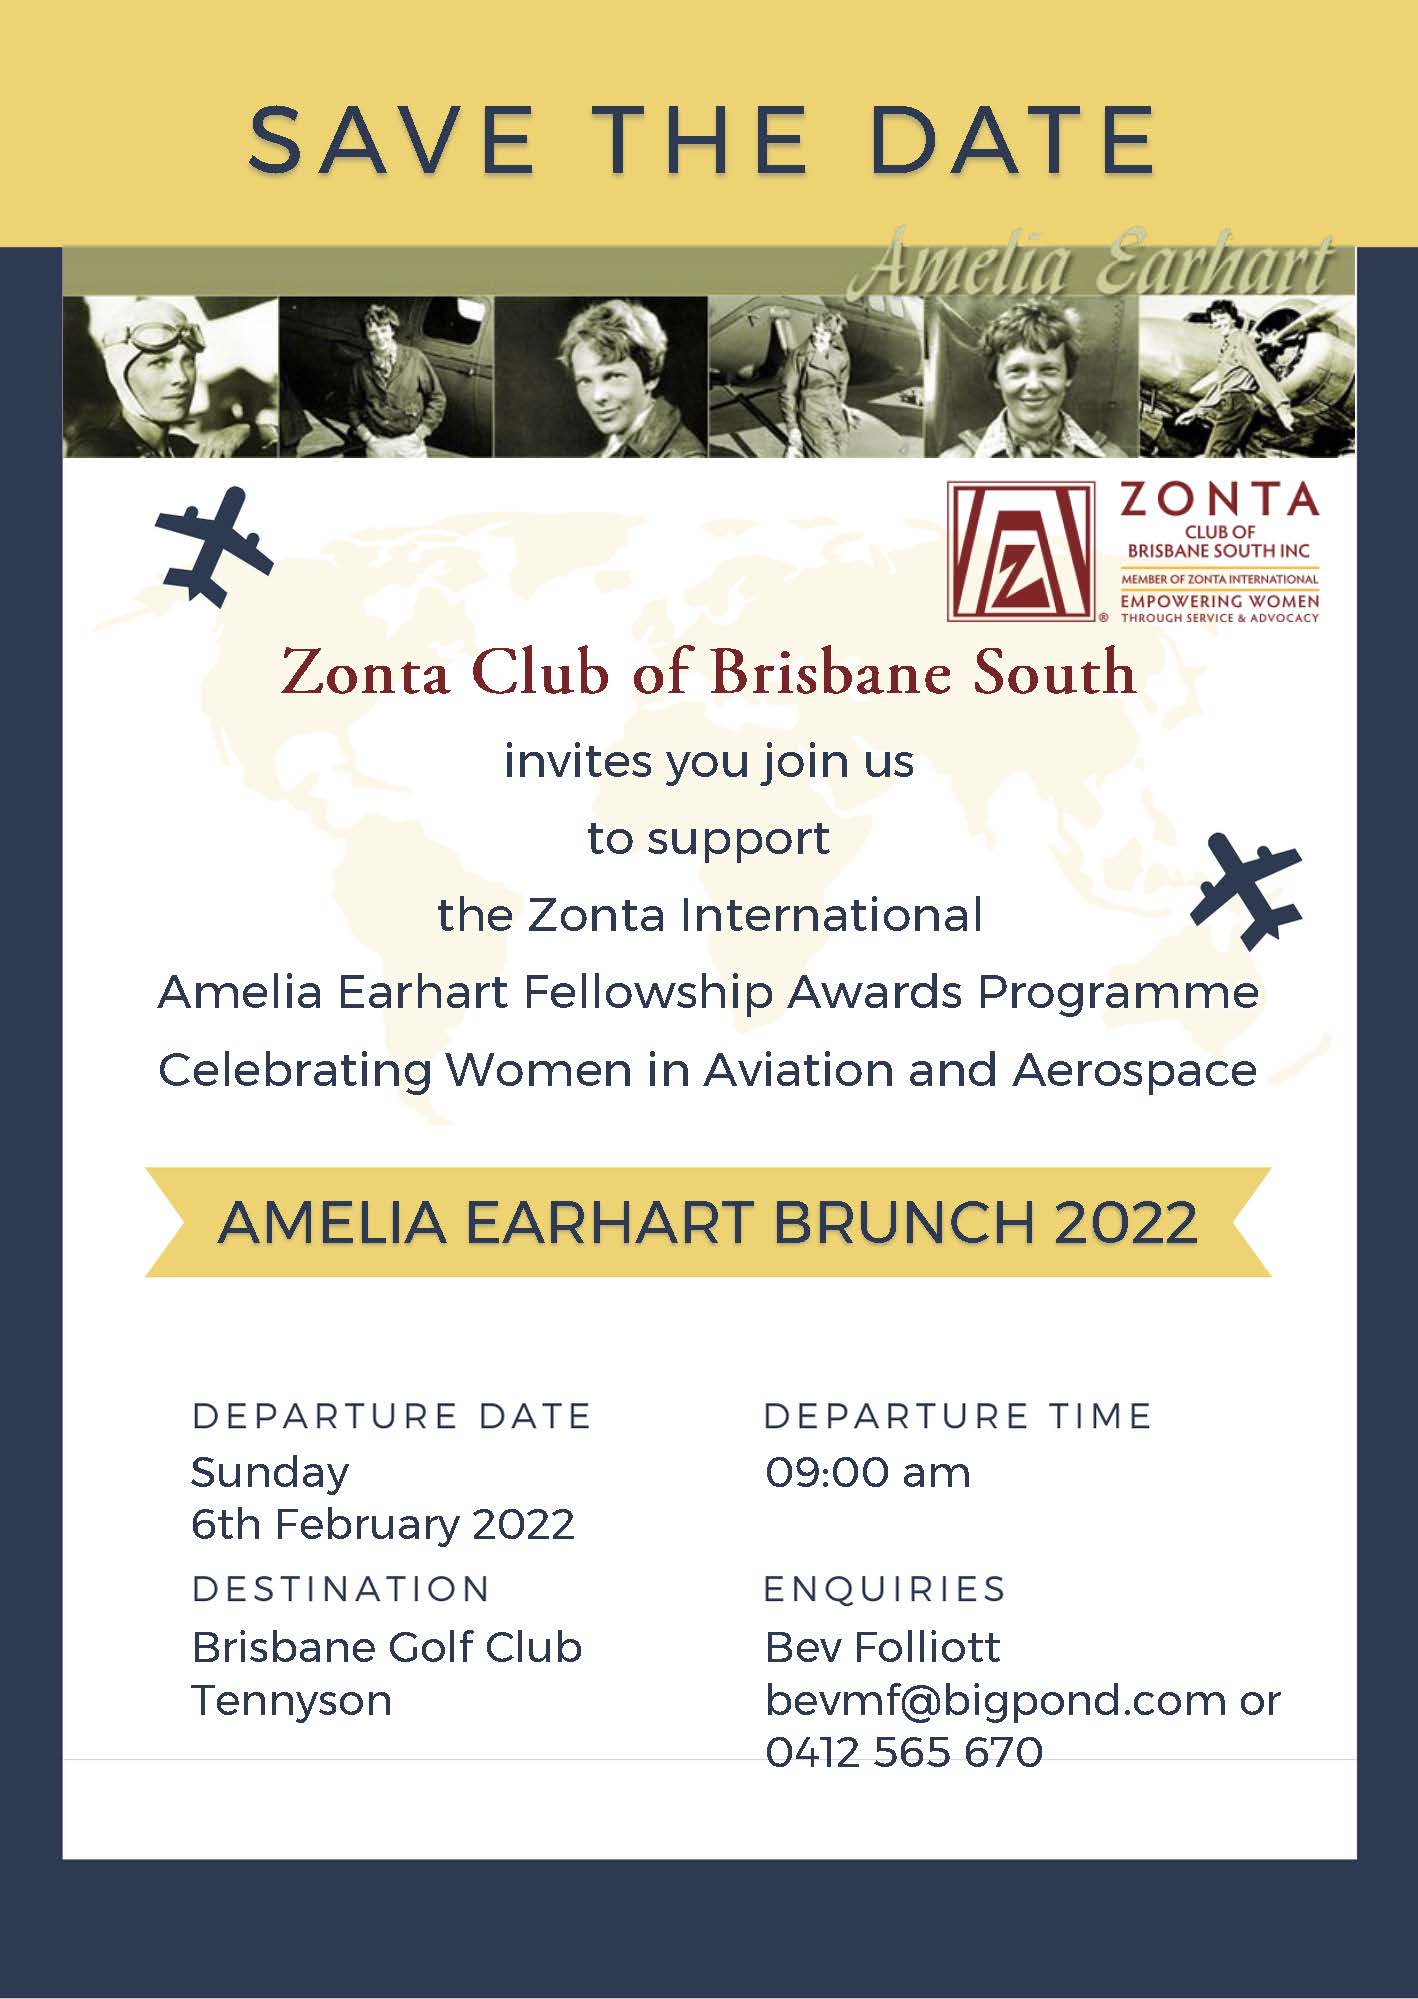 Amelia Earhart Brunch 2022 - Brisbane - CANCELLED DUE TO COVID @ Brisbane Golf Club